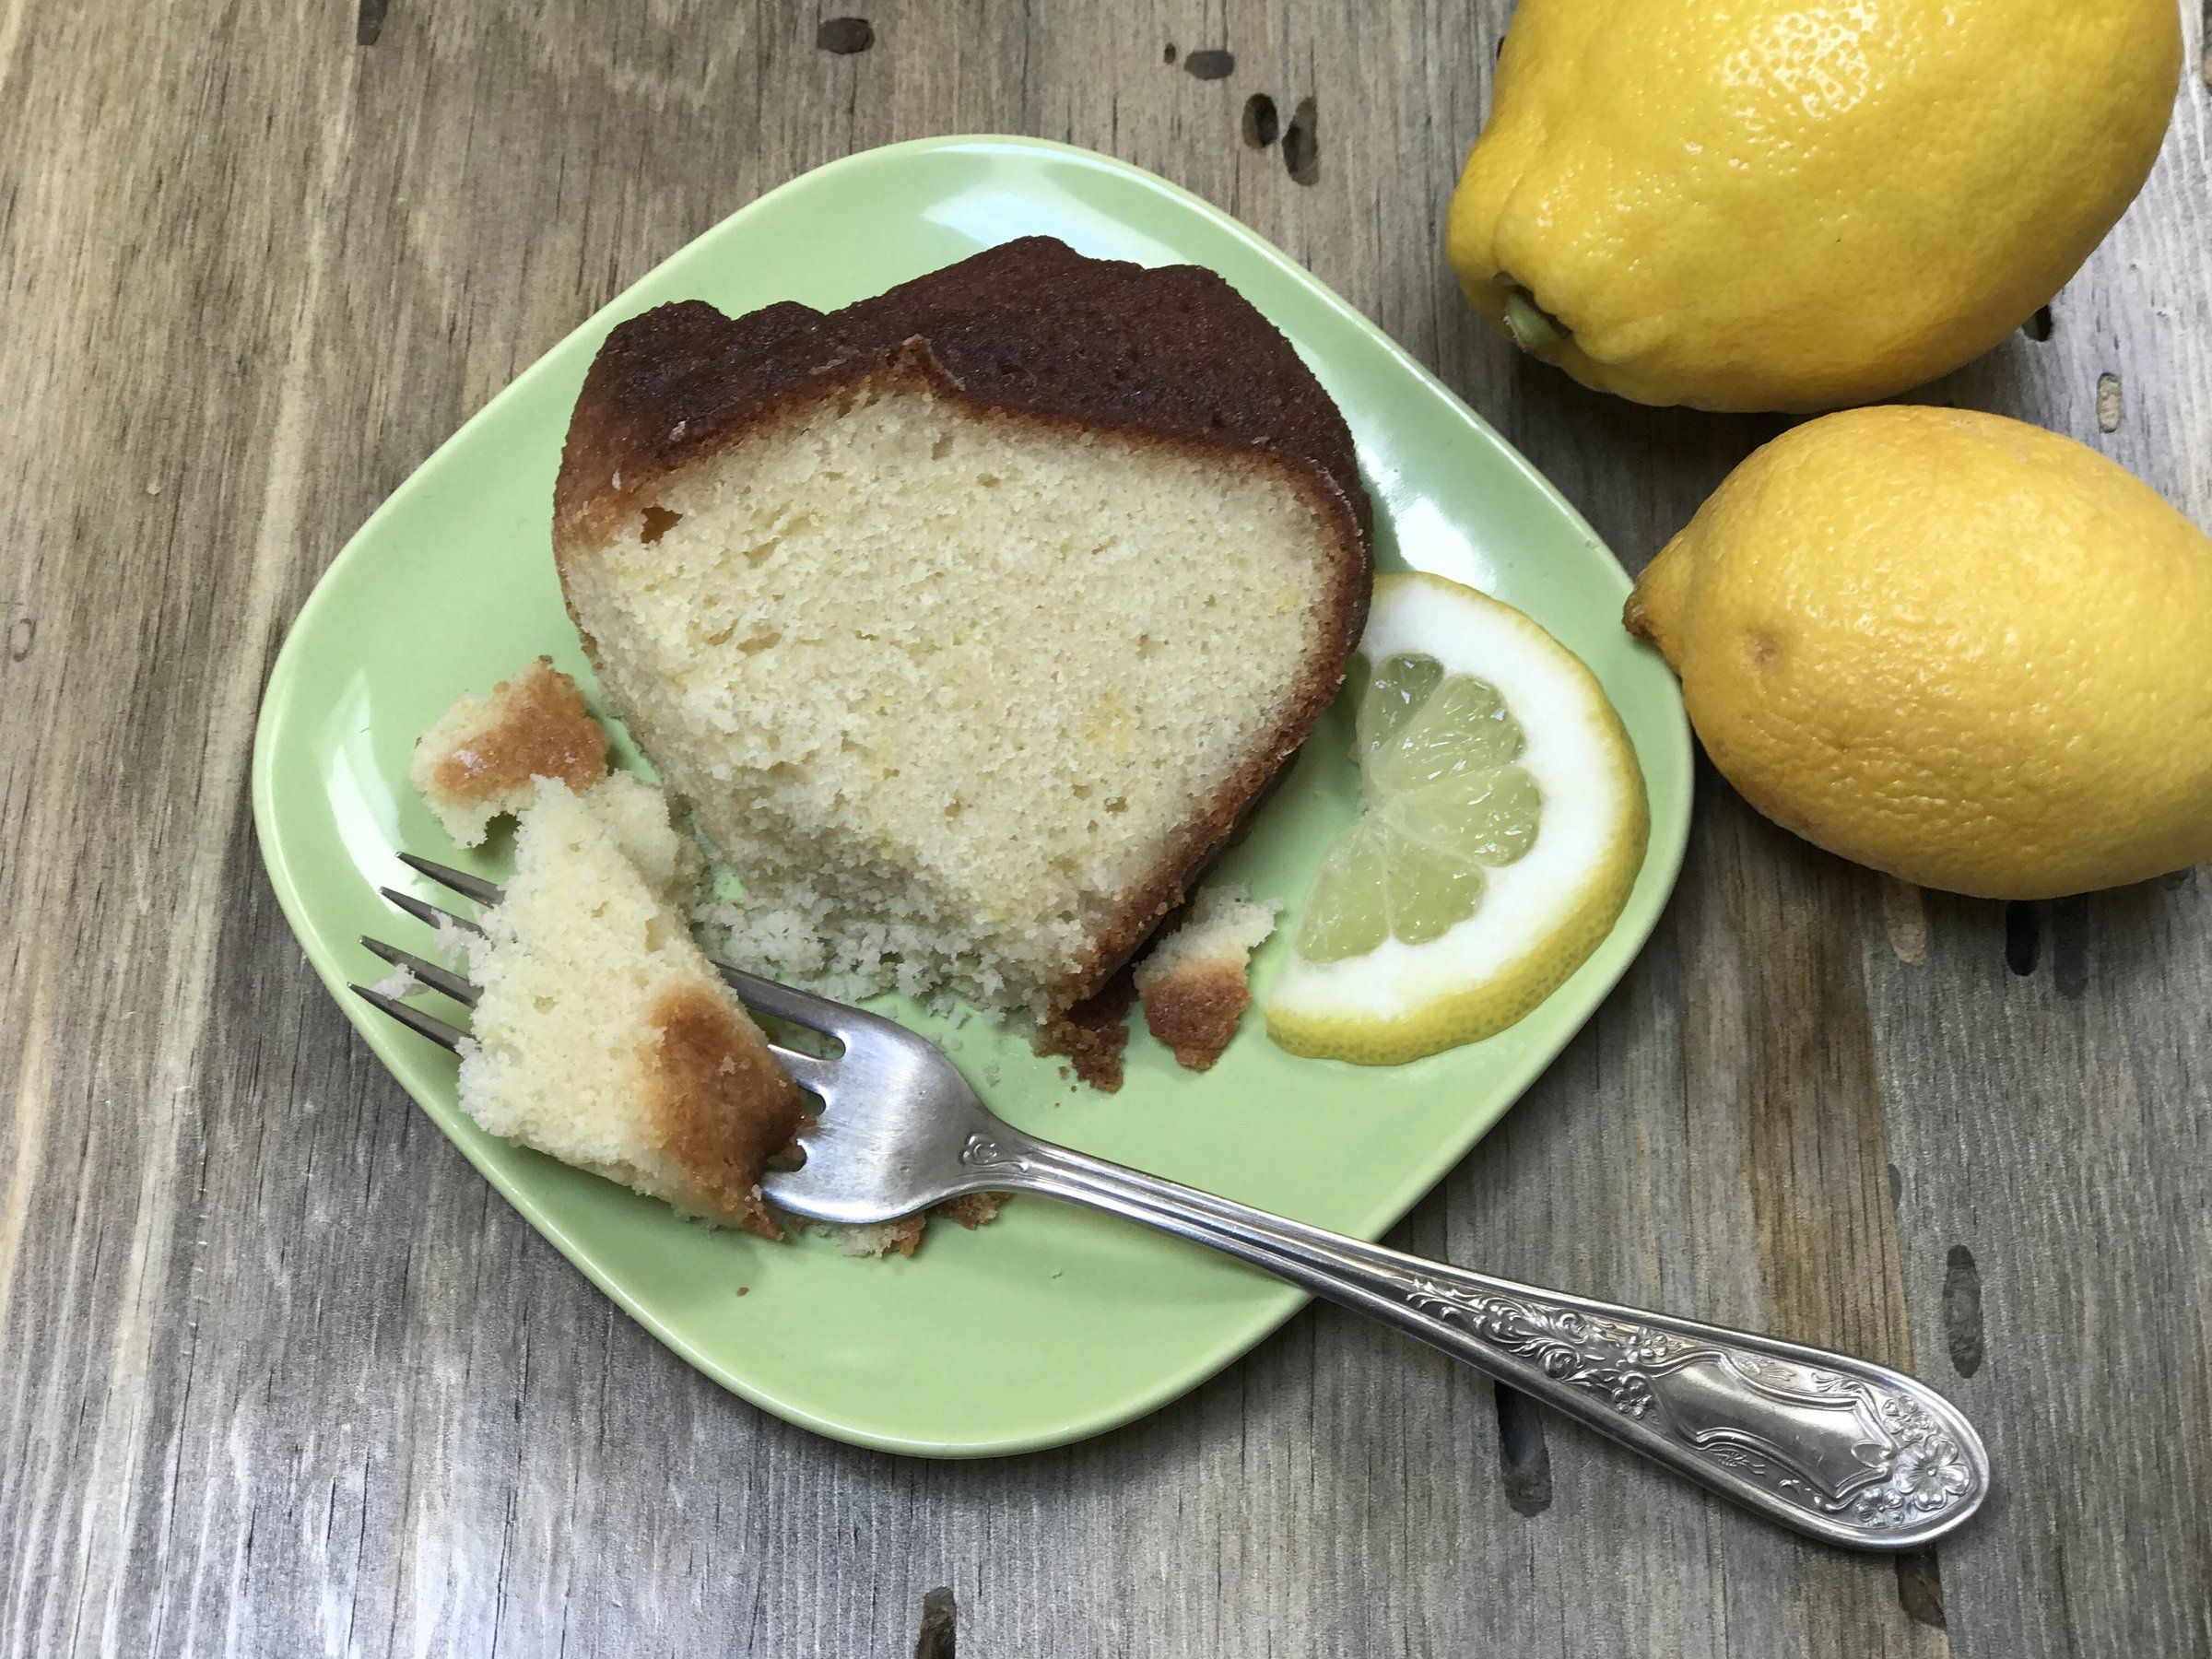 Maida Heatter's Best Damn Lemon Cake – DAVE BAKES